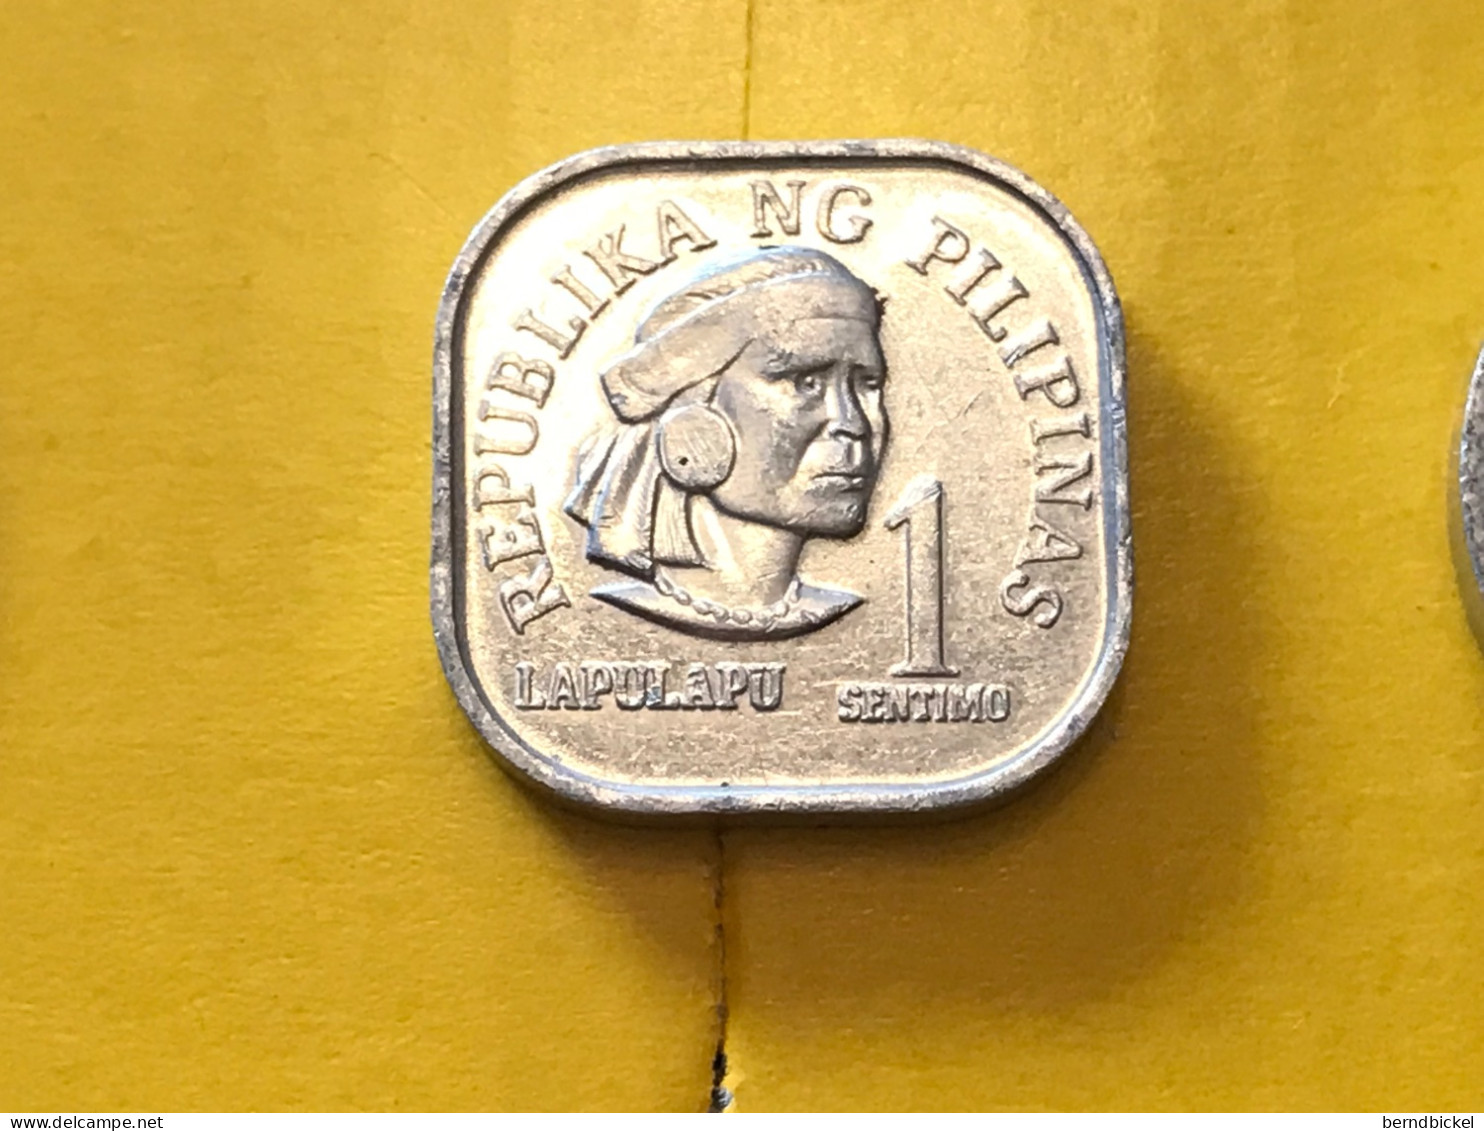 Münze Münzen Umlaufmünze Philippinen 1 Sentimo 1978 - Philippines